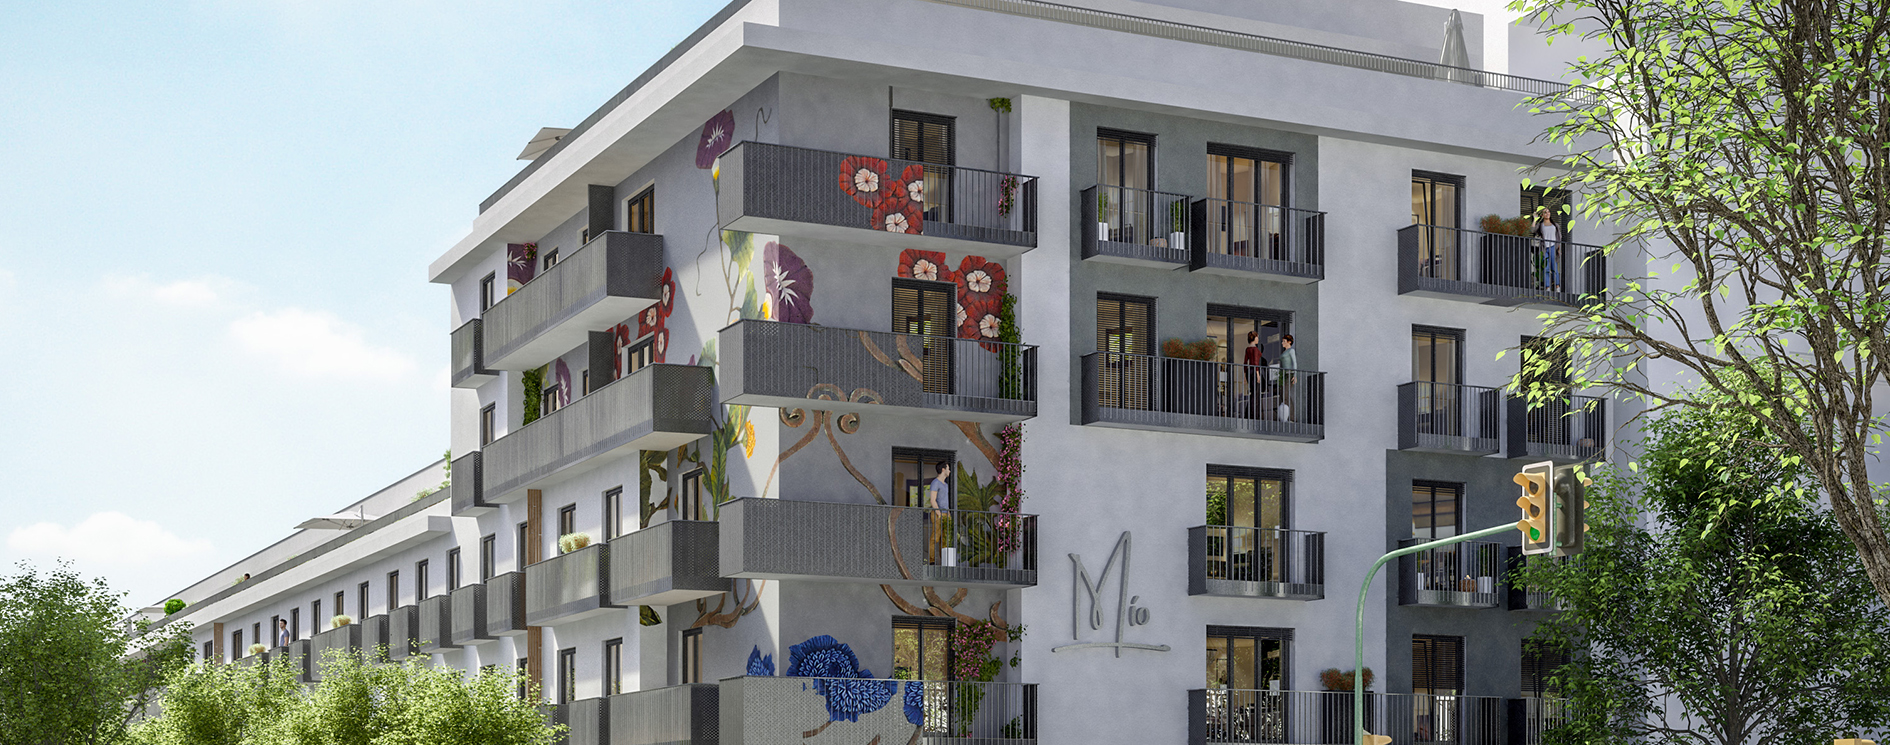 Investieren in die Zukunft des Wohnens: Neubau-Projekt MÍO mit Micro-Apartments zum Globalkauf in Palma de Mallorca